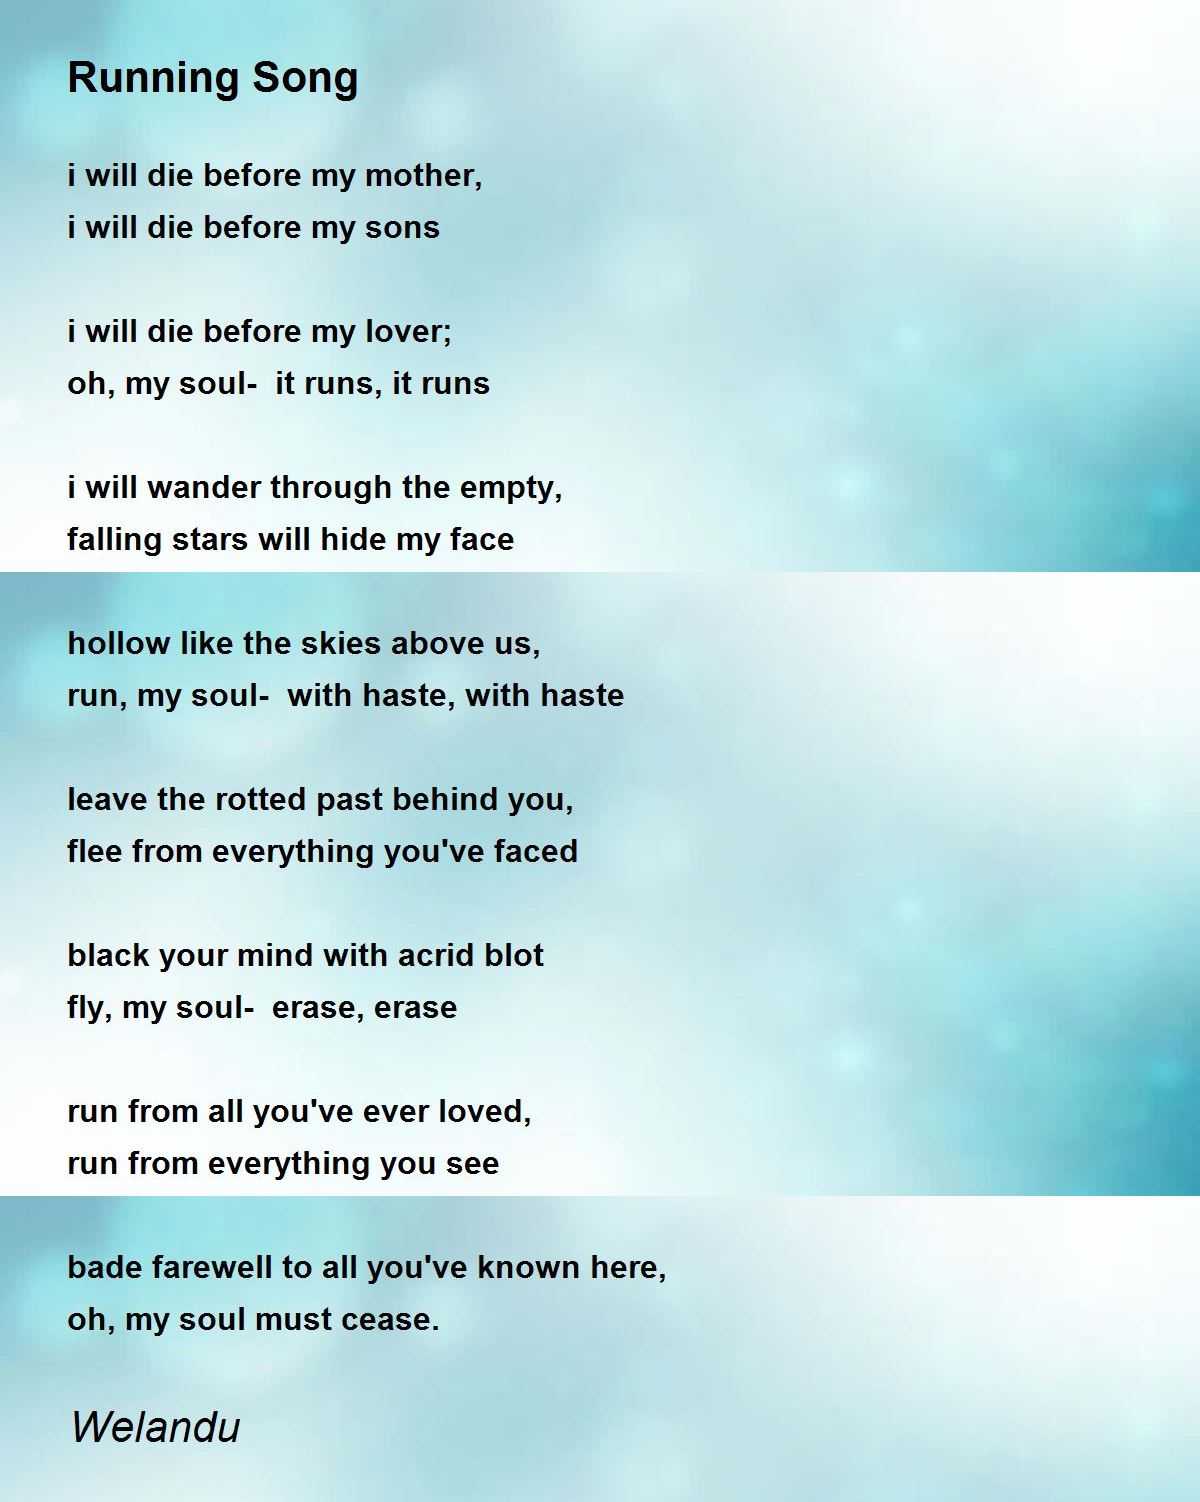 Running Song Poem By Welandu Poem Hunter